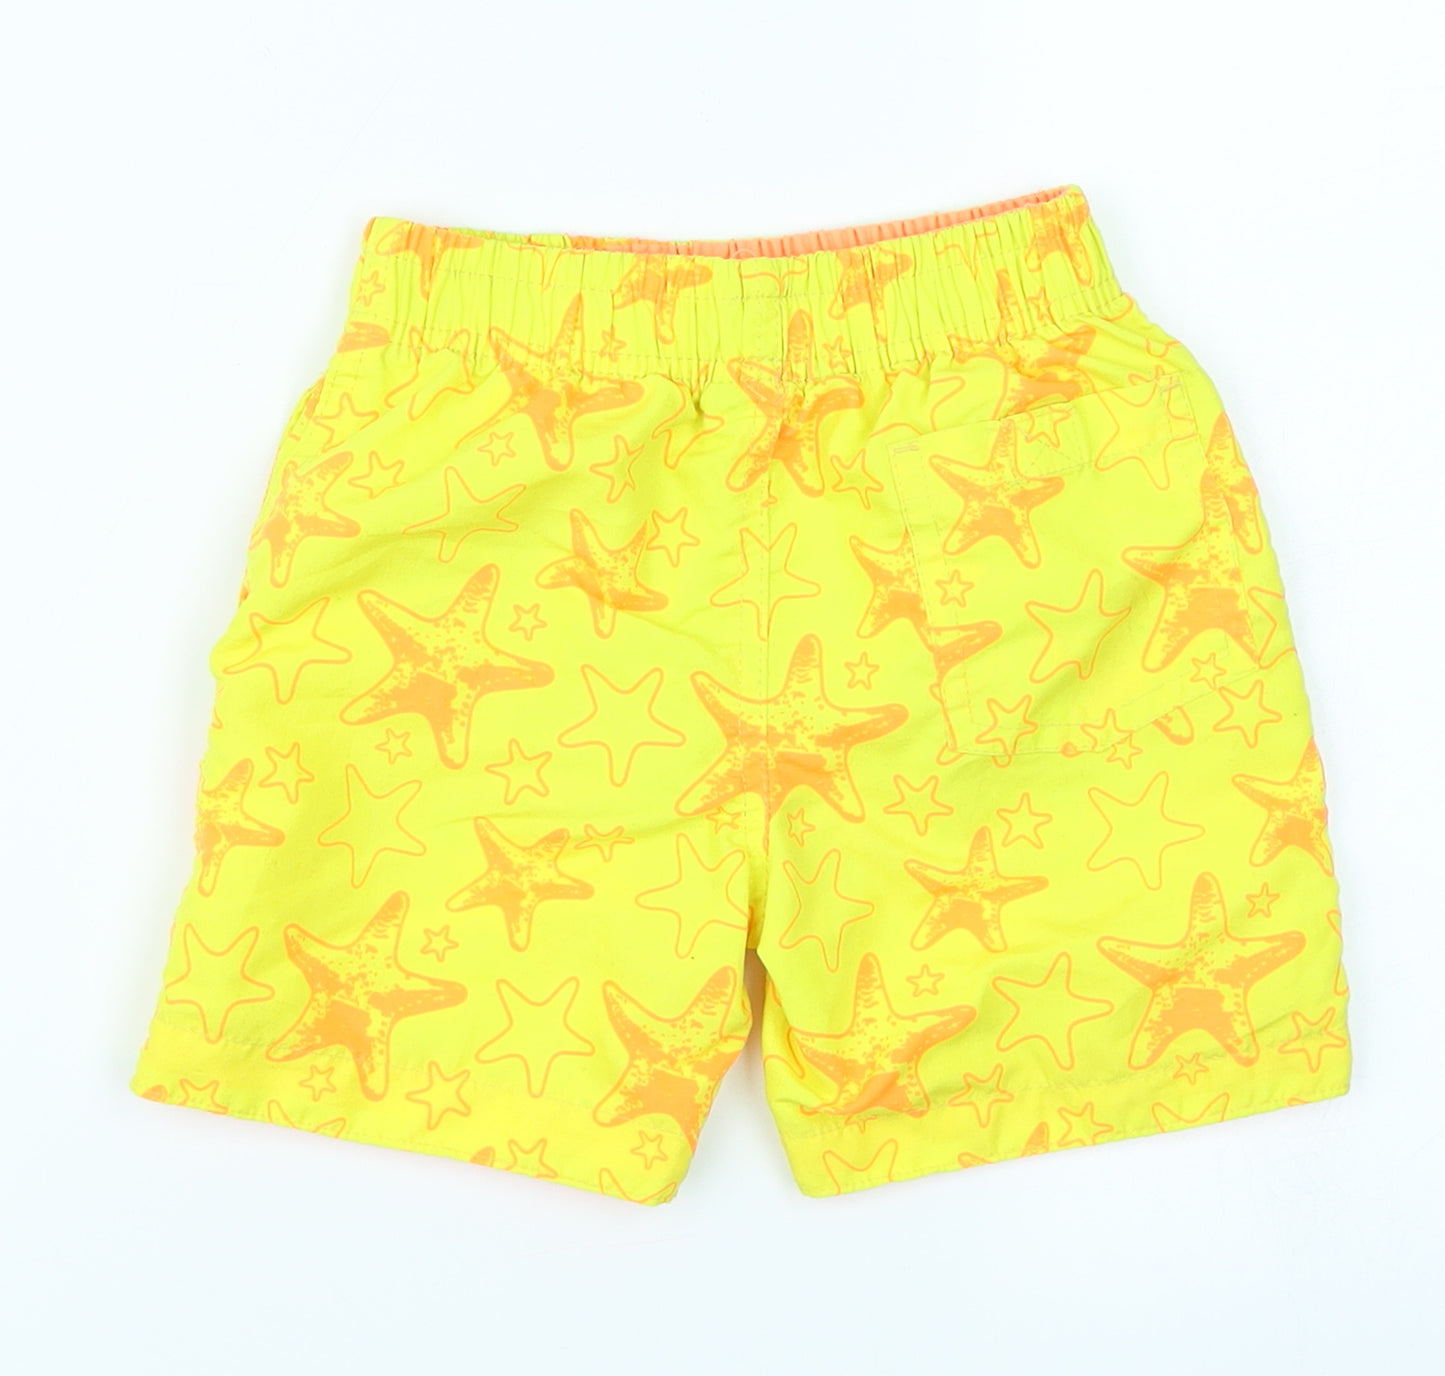 Rebel Boys Yellow   Sweat Shorts Size 3-4 Years